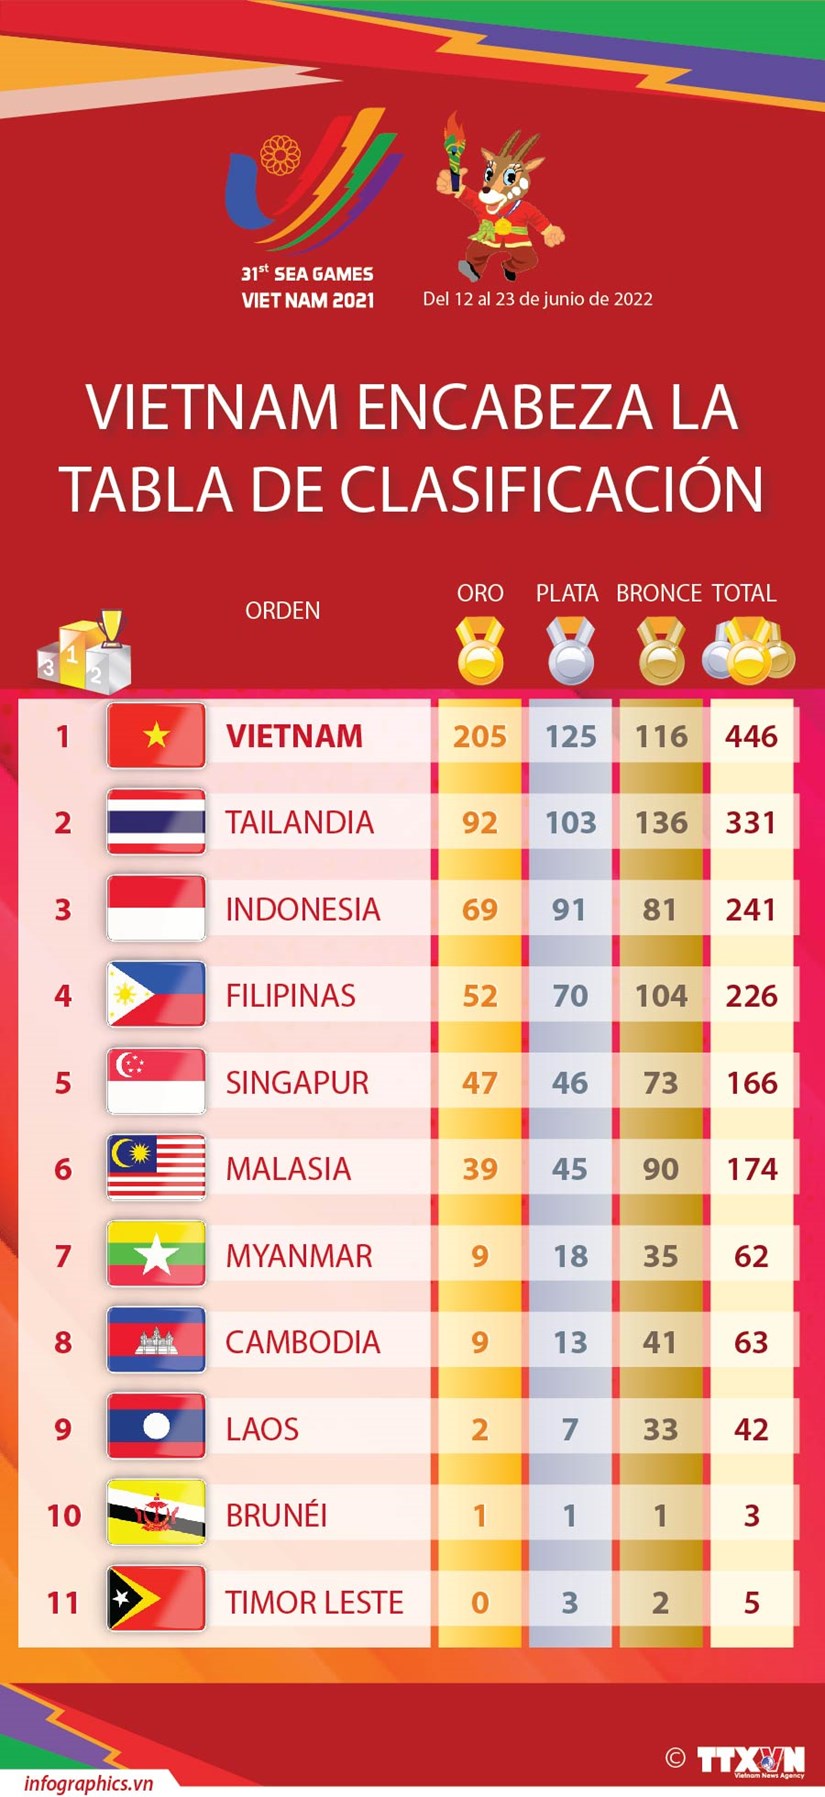 Vietnam encabeza la tabla de clasificacion de SEA Games 31 hinh anh 1